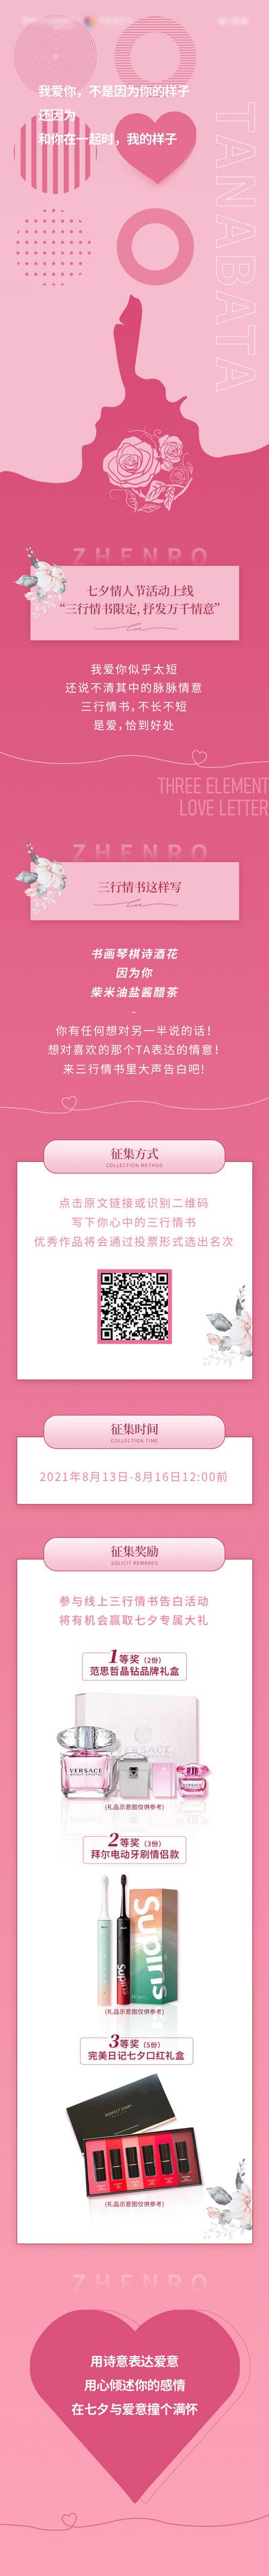 南门网 专题设计 长图 七夕 中国传统节日 情人节 公历节日 情书 告白 粉色 活动